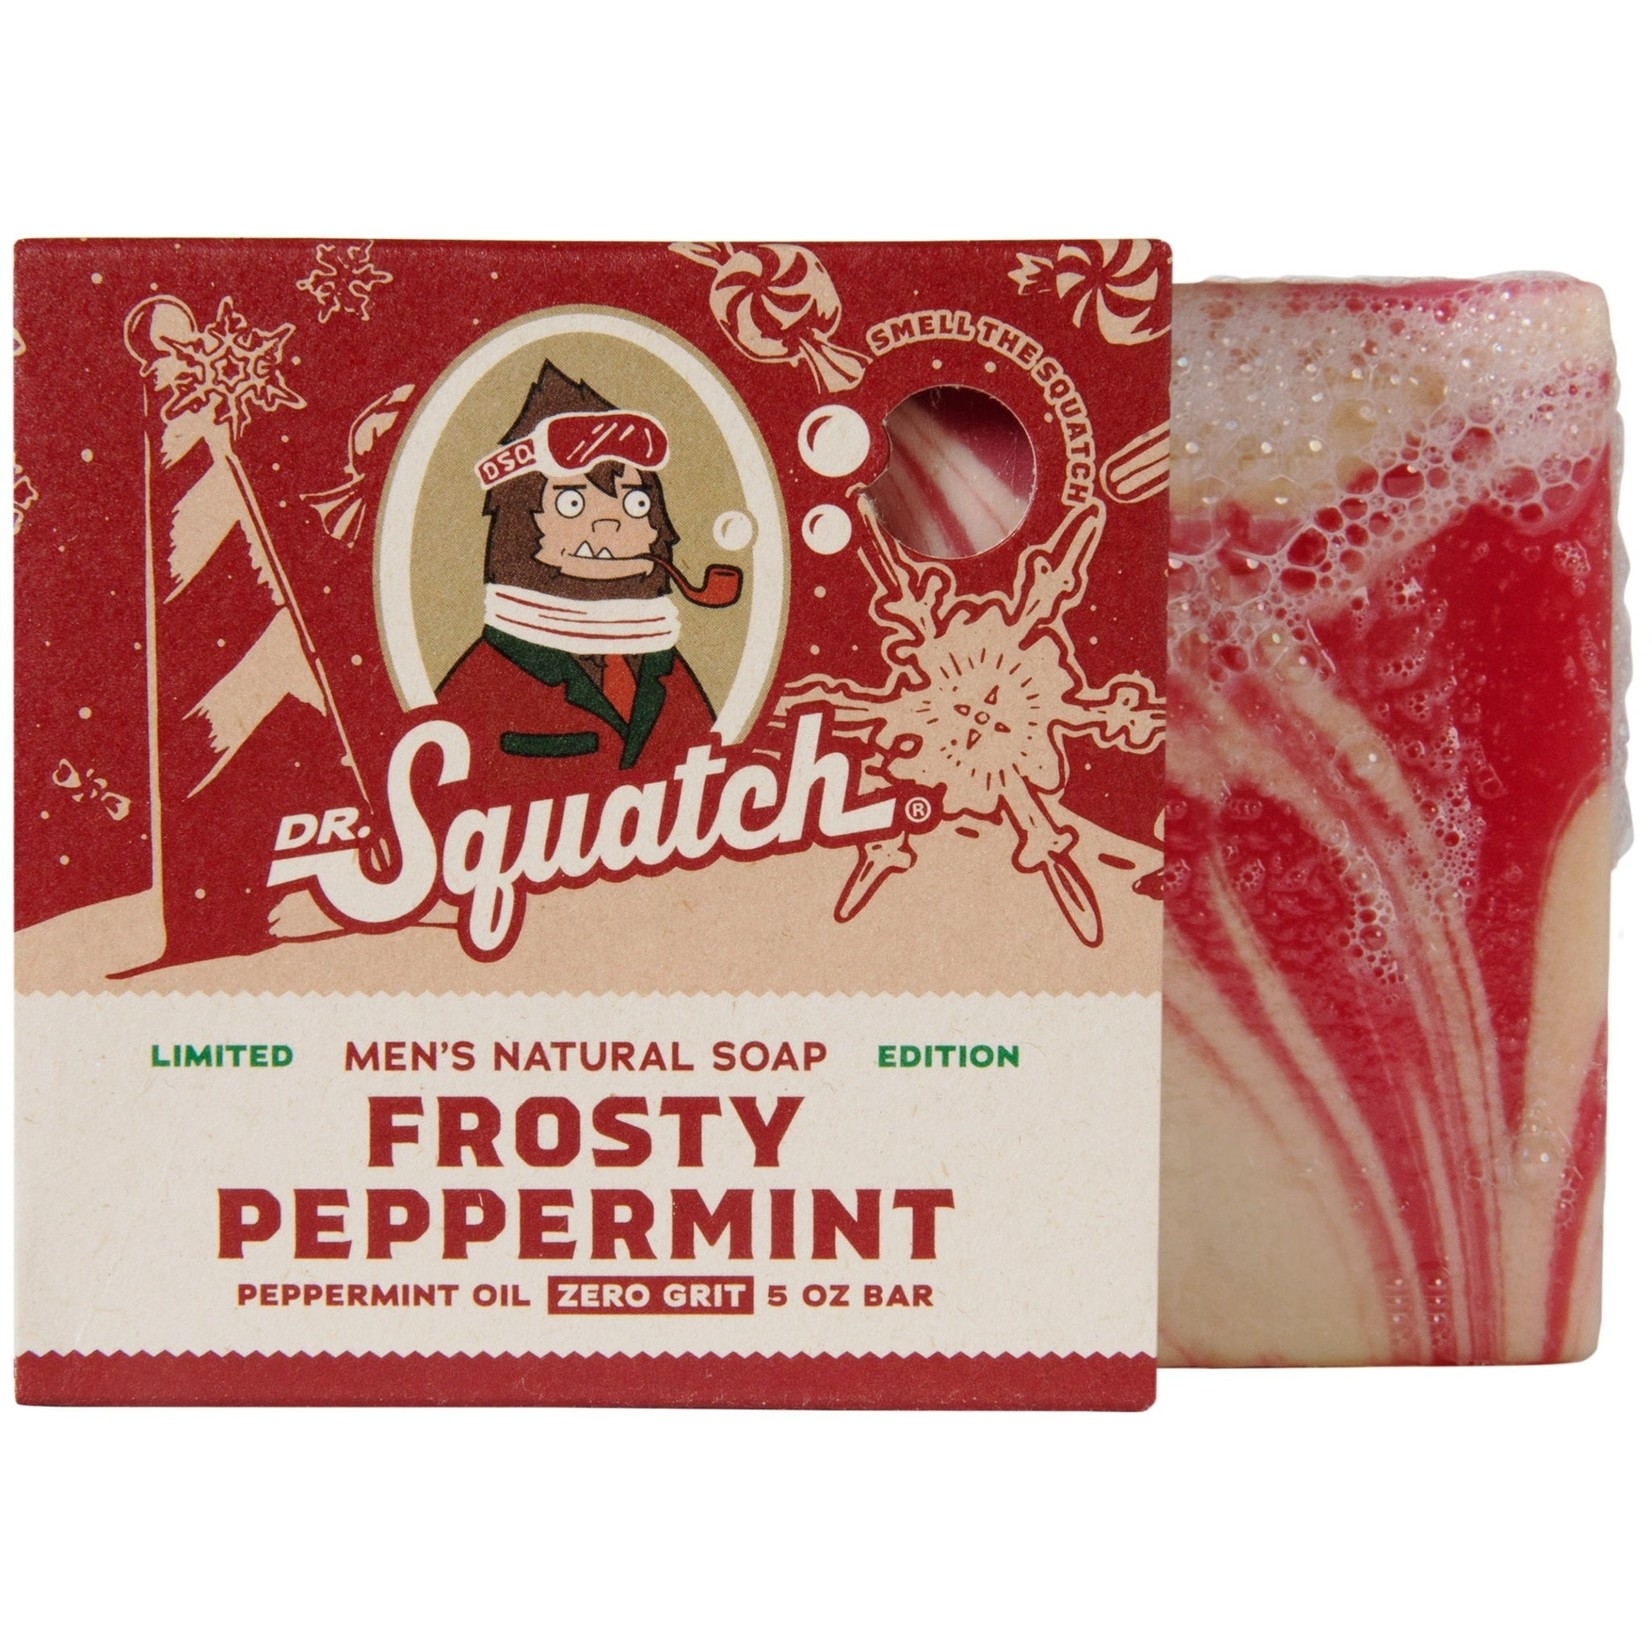 Dr. Squatch Dr. Squatch - Frosty Peppermint Soap